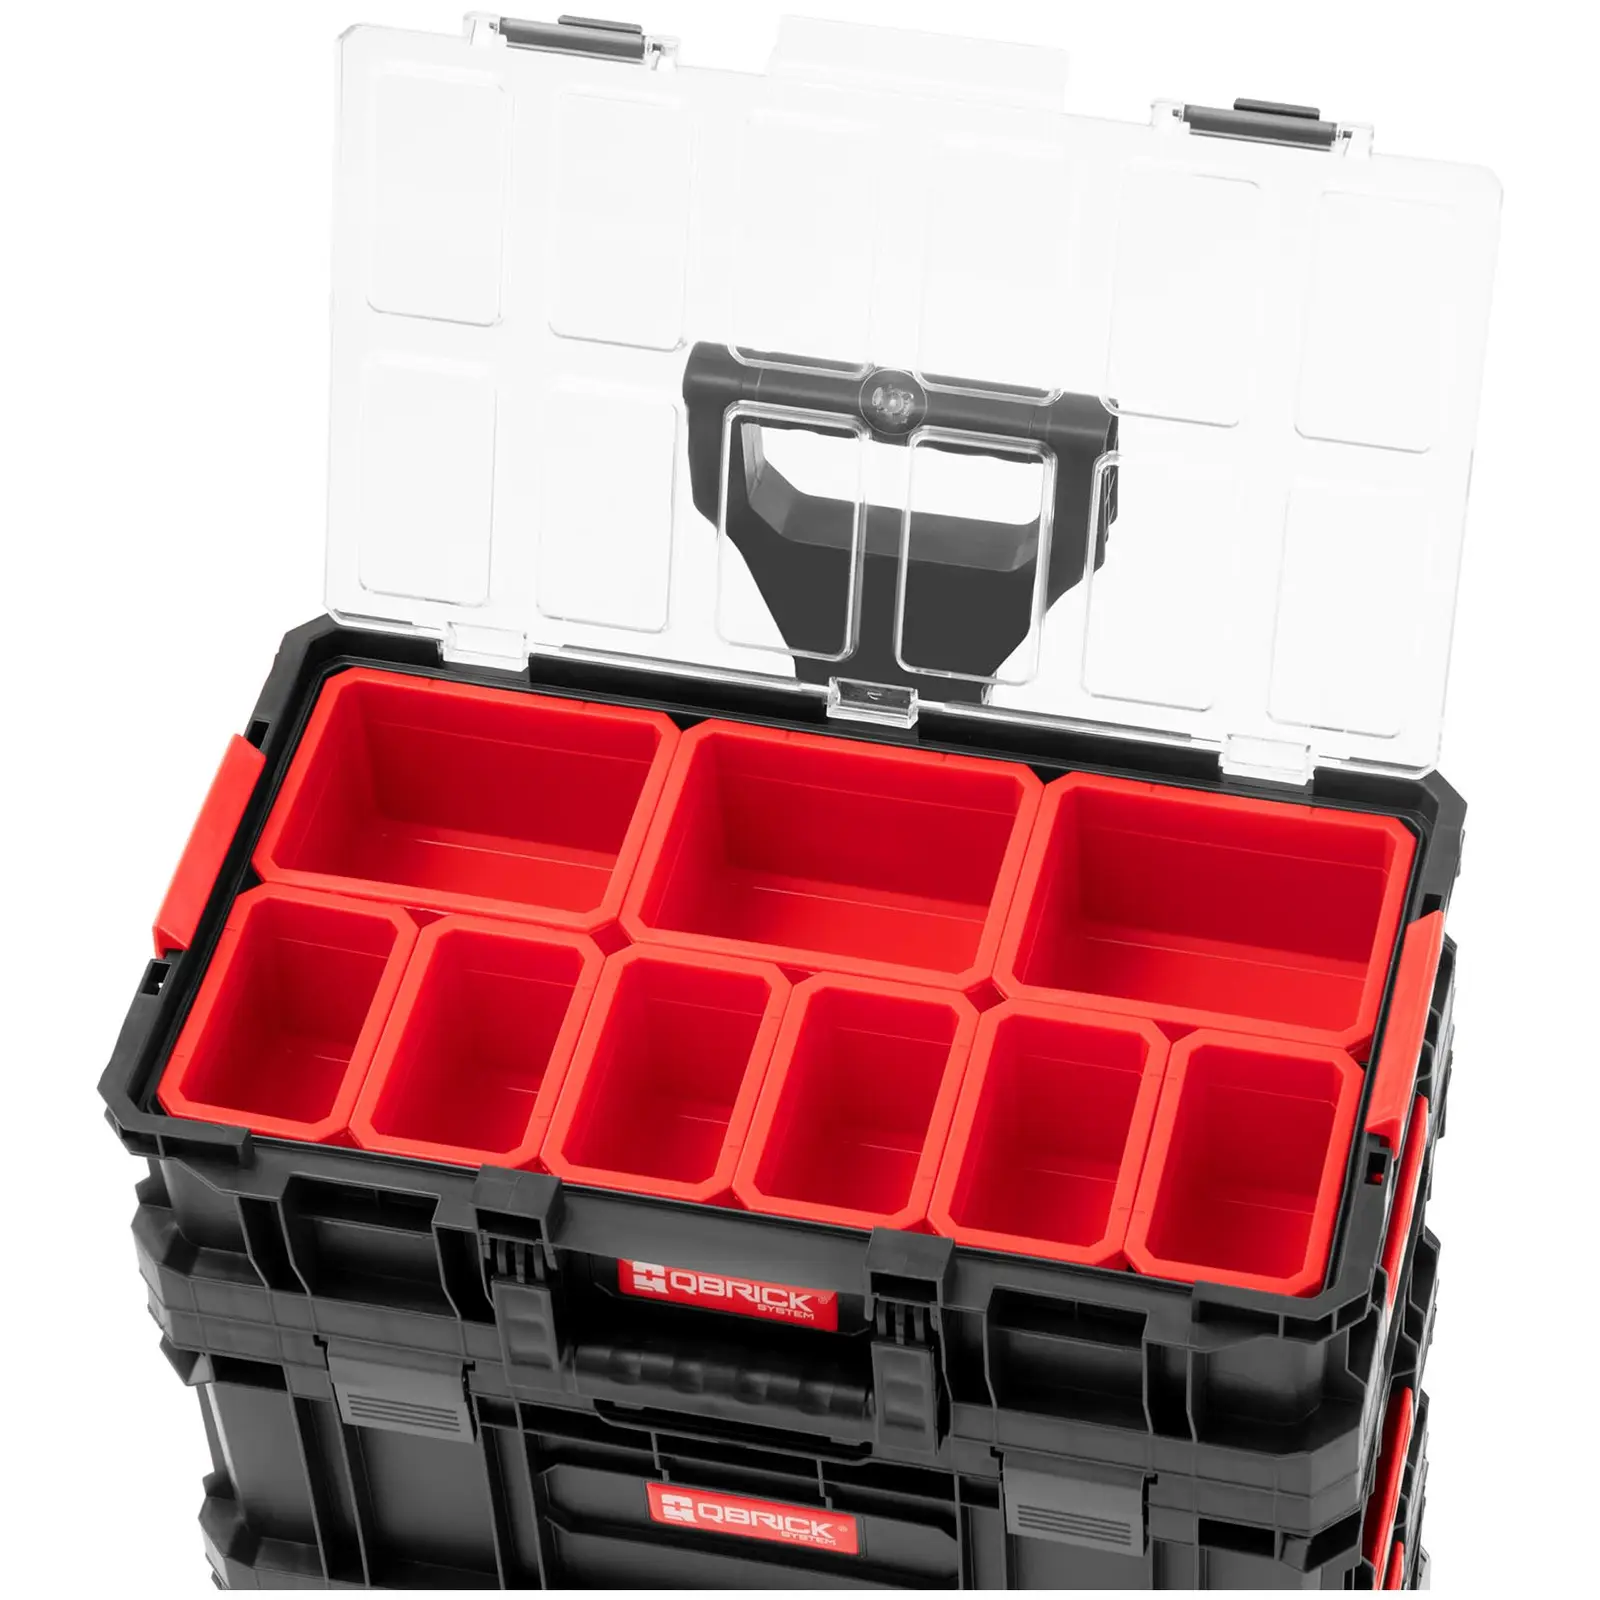 Carrinho de ferramentas 6 em 1 - kit com maleta, caixa de ferramentas e organizador